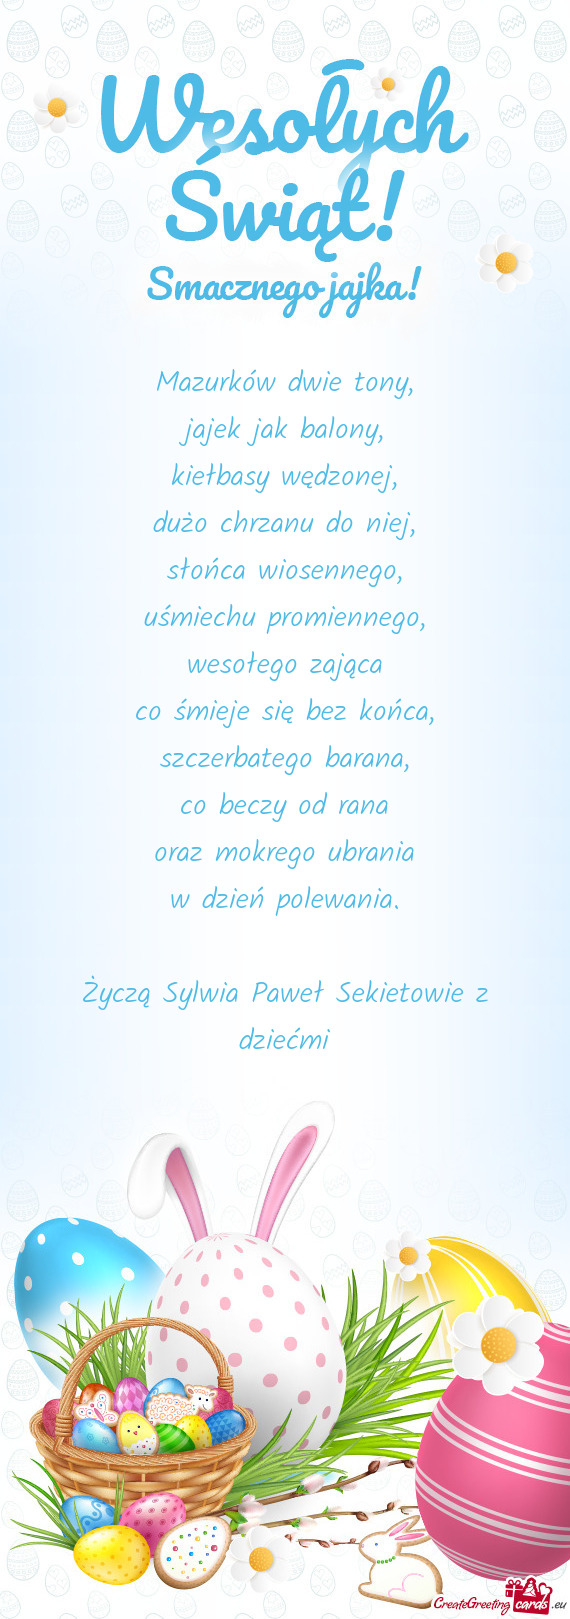 Życzą Sylwia Paweł Sekietowie z dziećmi